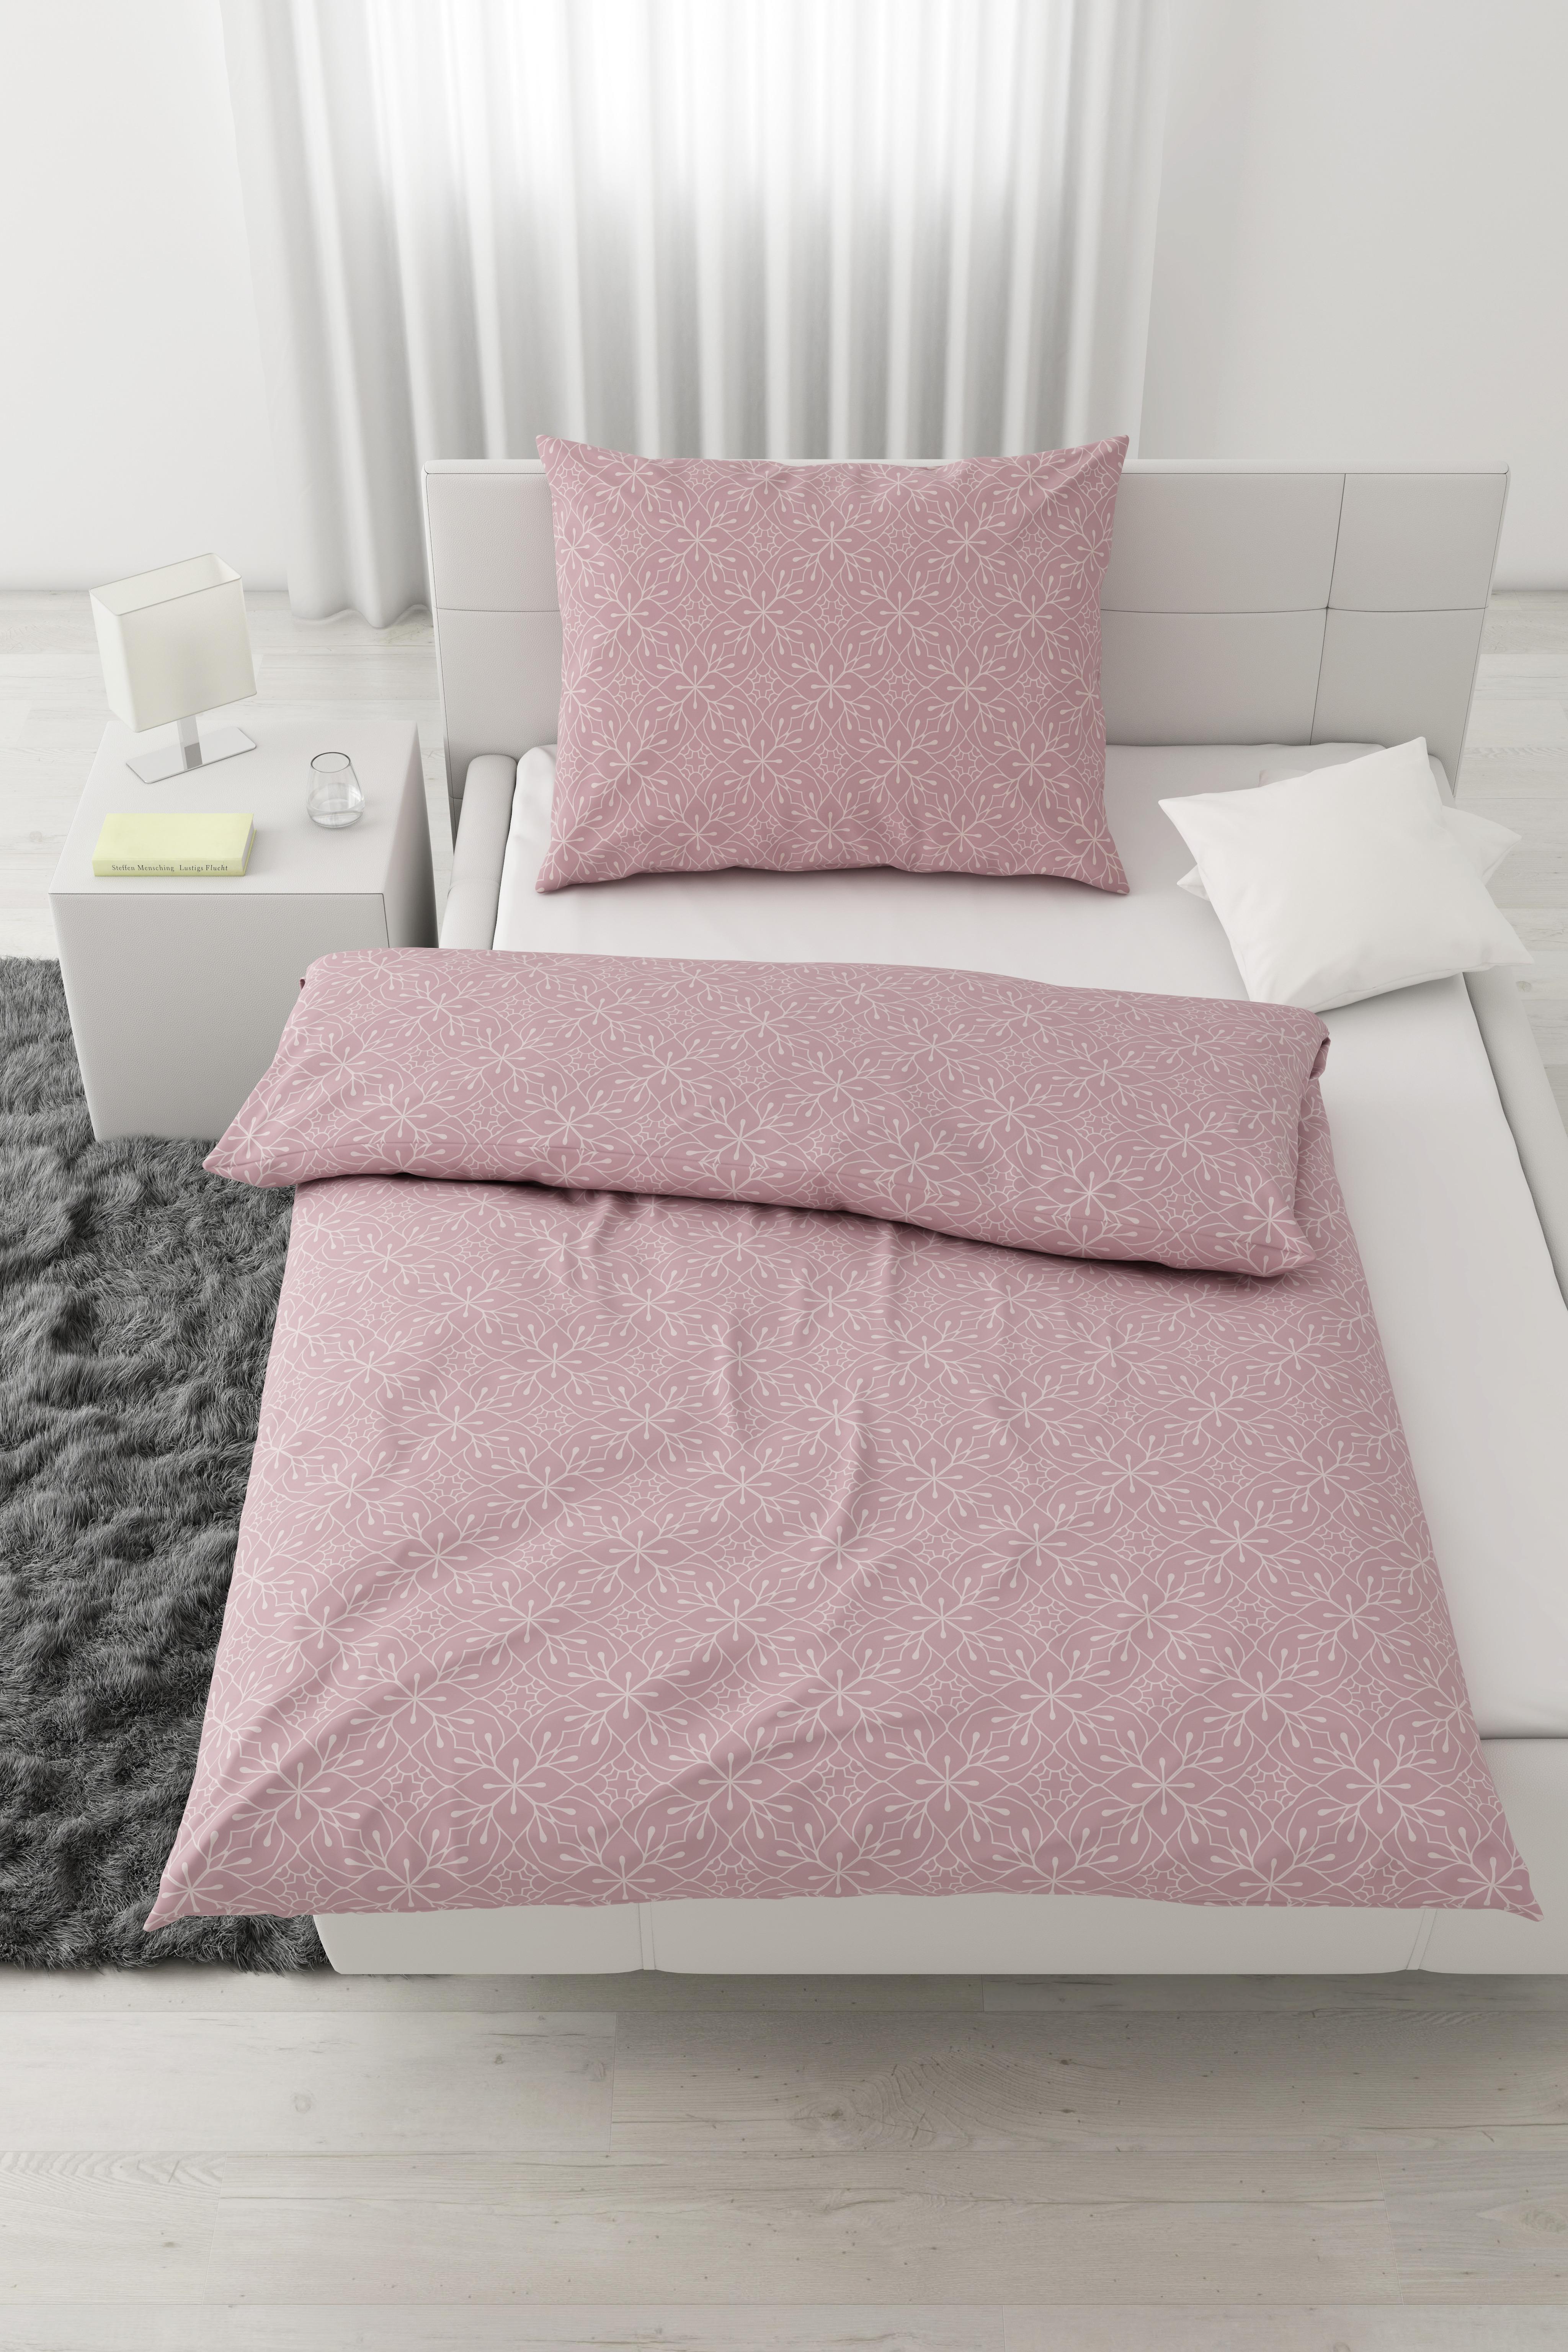 Lenjerie de pat Kaia - roz, Konventionell, textil (140/200cm) - Modern Living